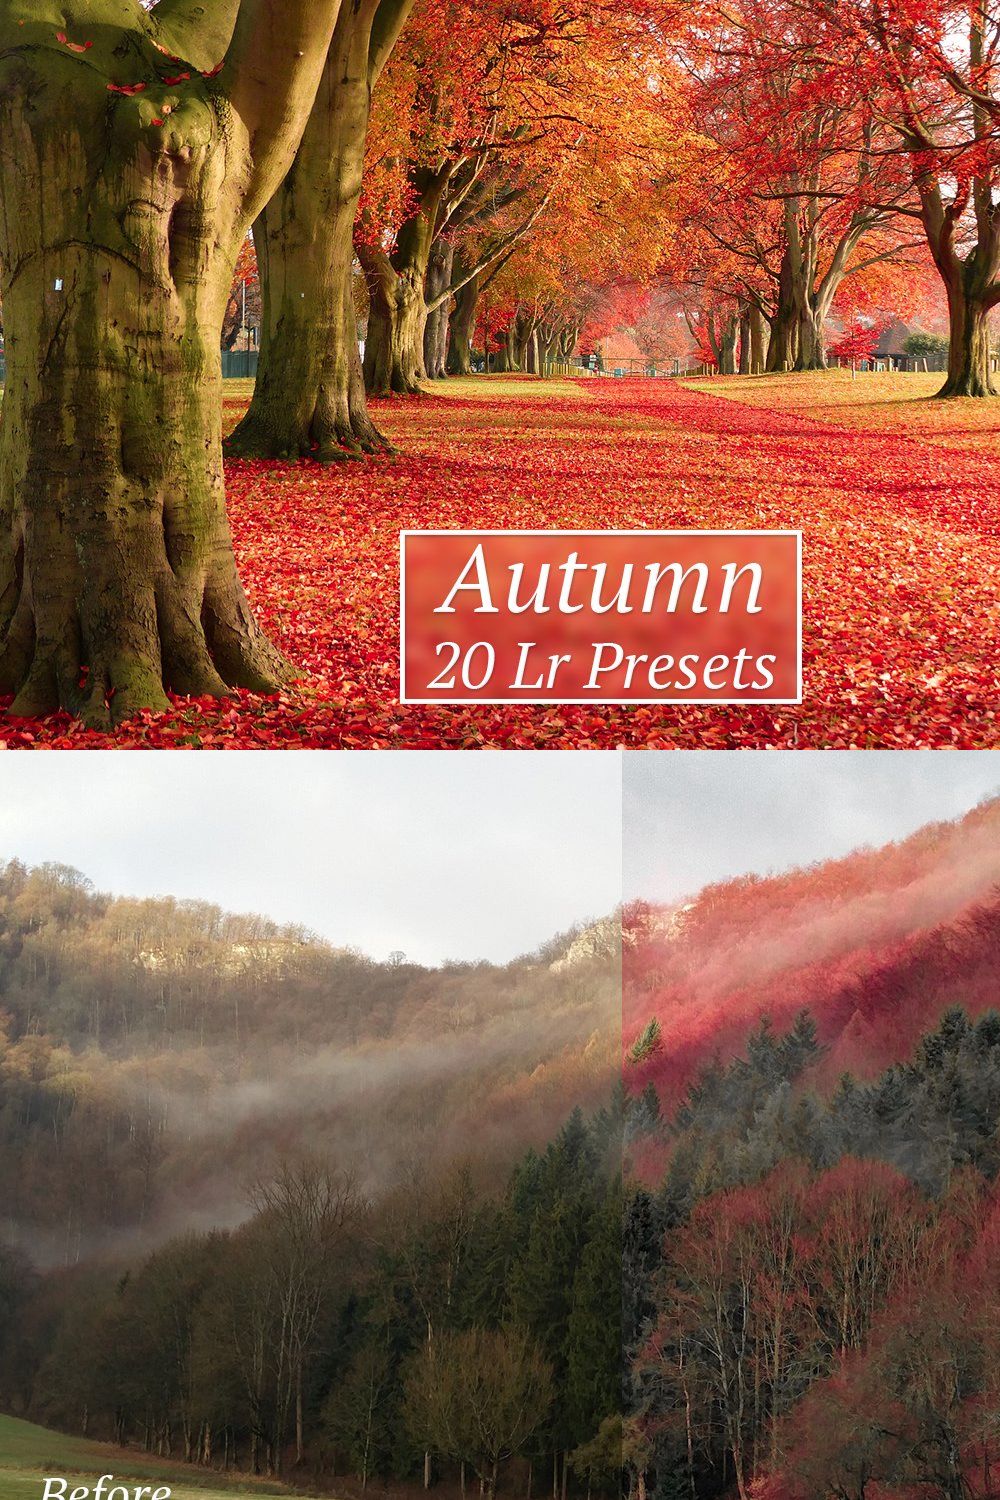 20 Autumn Lr Presets pinterest preview image.